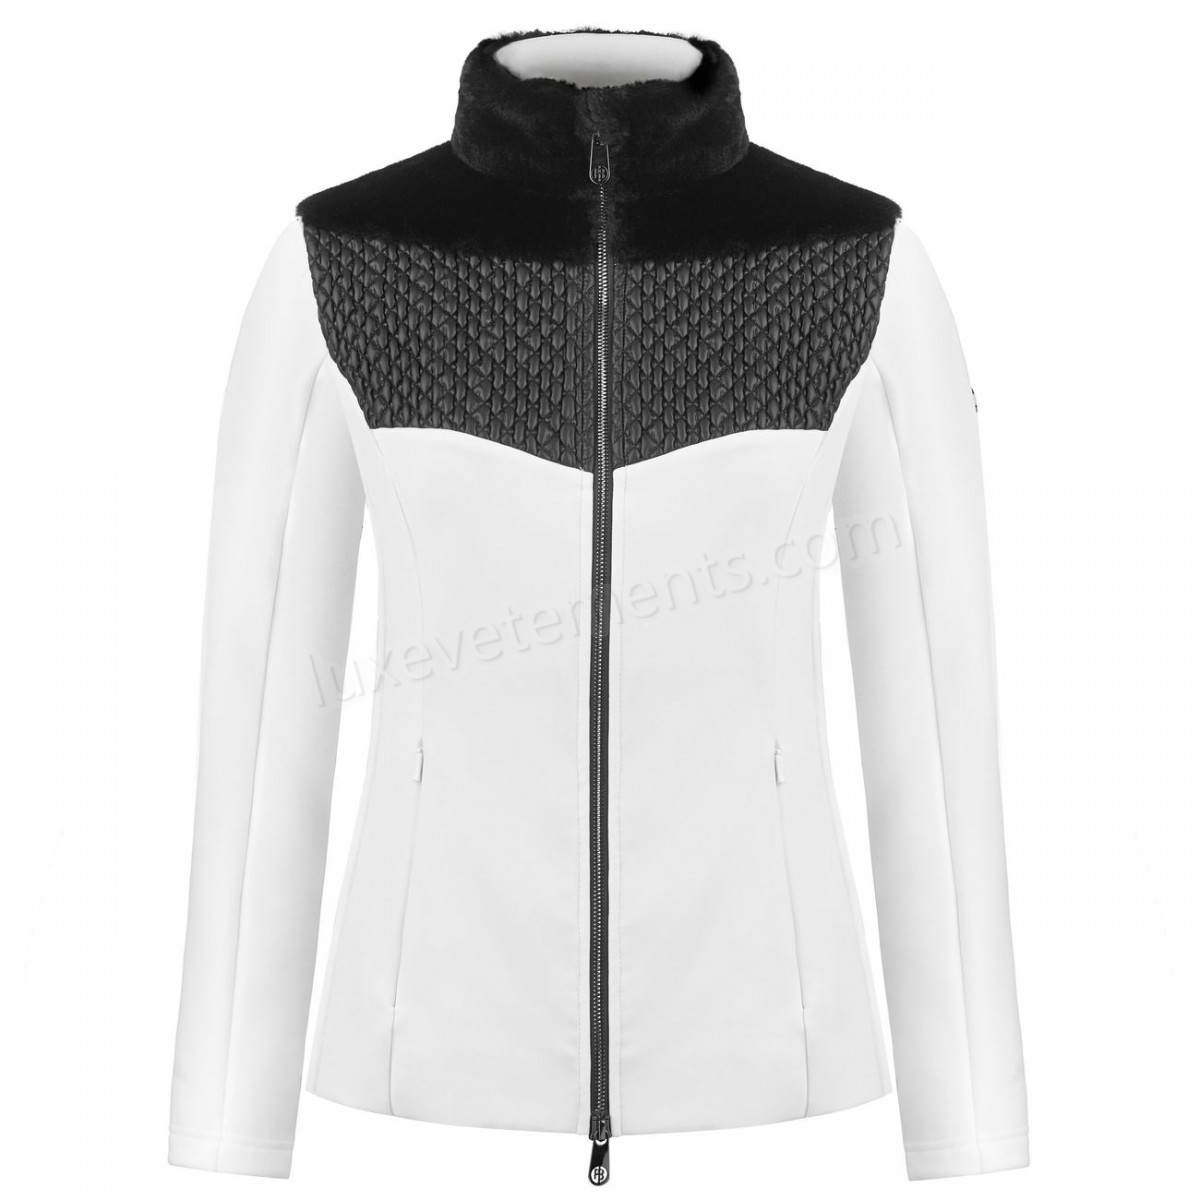 Poivre Blanc-Sports d'hiver femme POIVRE BLANC Veste En Polaire Poivre Blanc Hybrid Stretch Fleece Jacket 1600 Multico White Femme Vente en ligne - -2